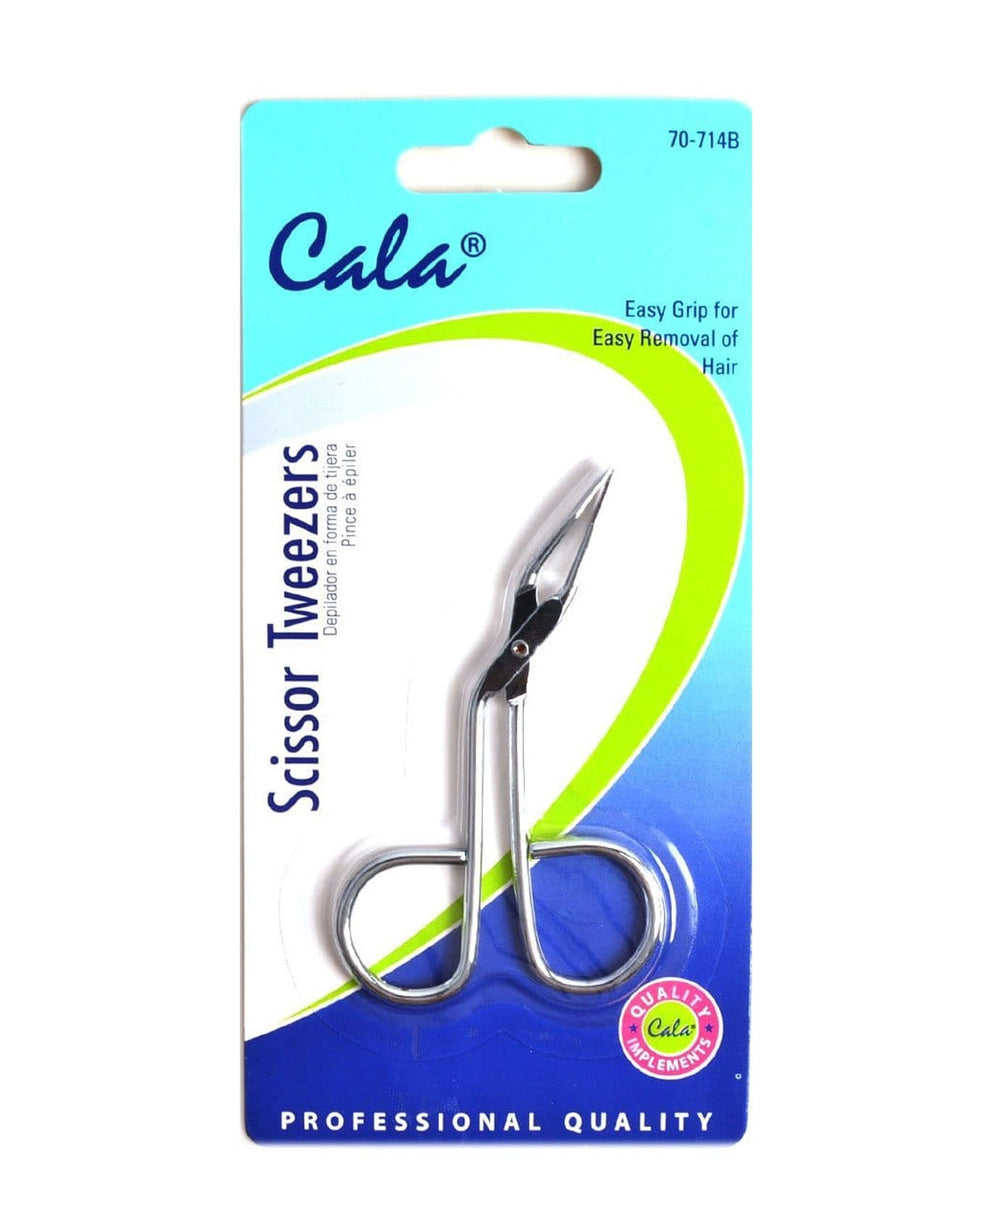 scissor tweezers